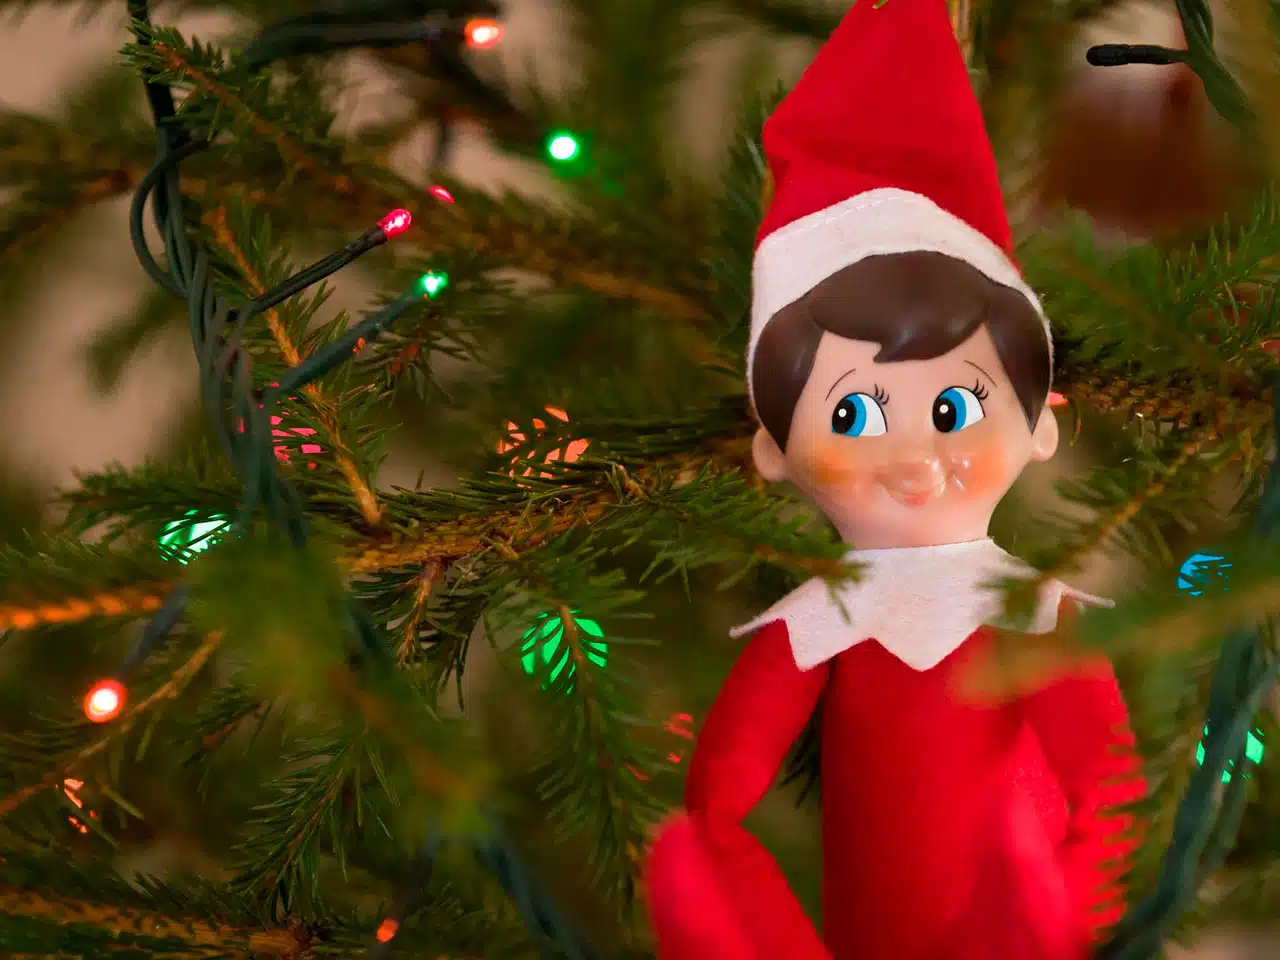 El elfo travieso, una divertida tradición para disfrutar en Navidad